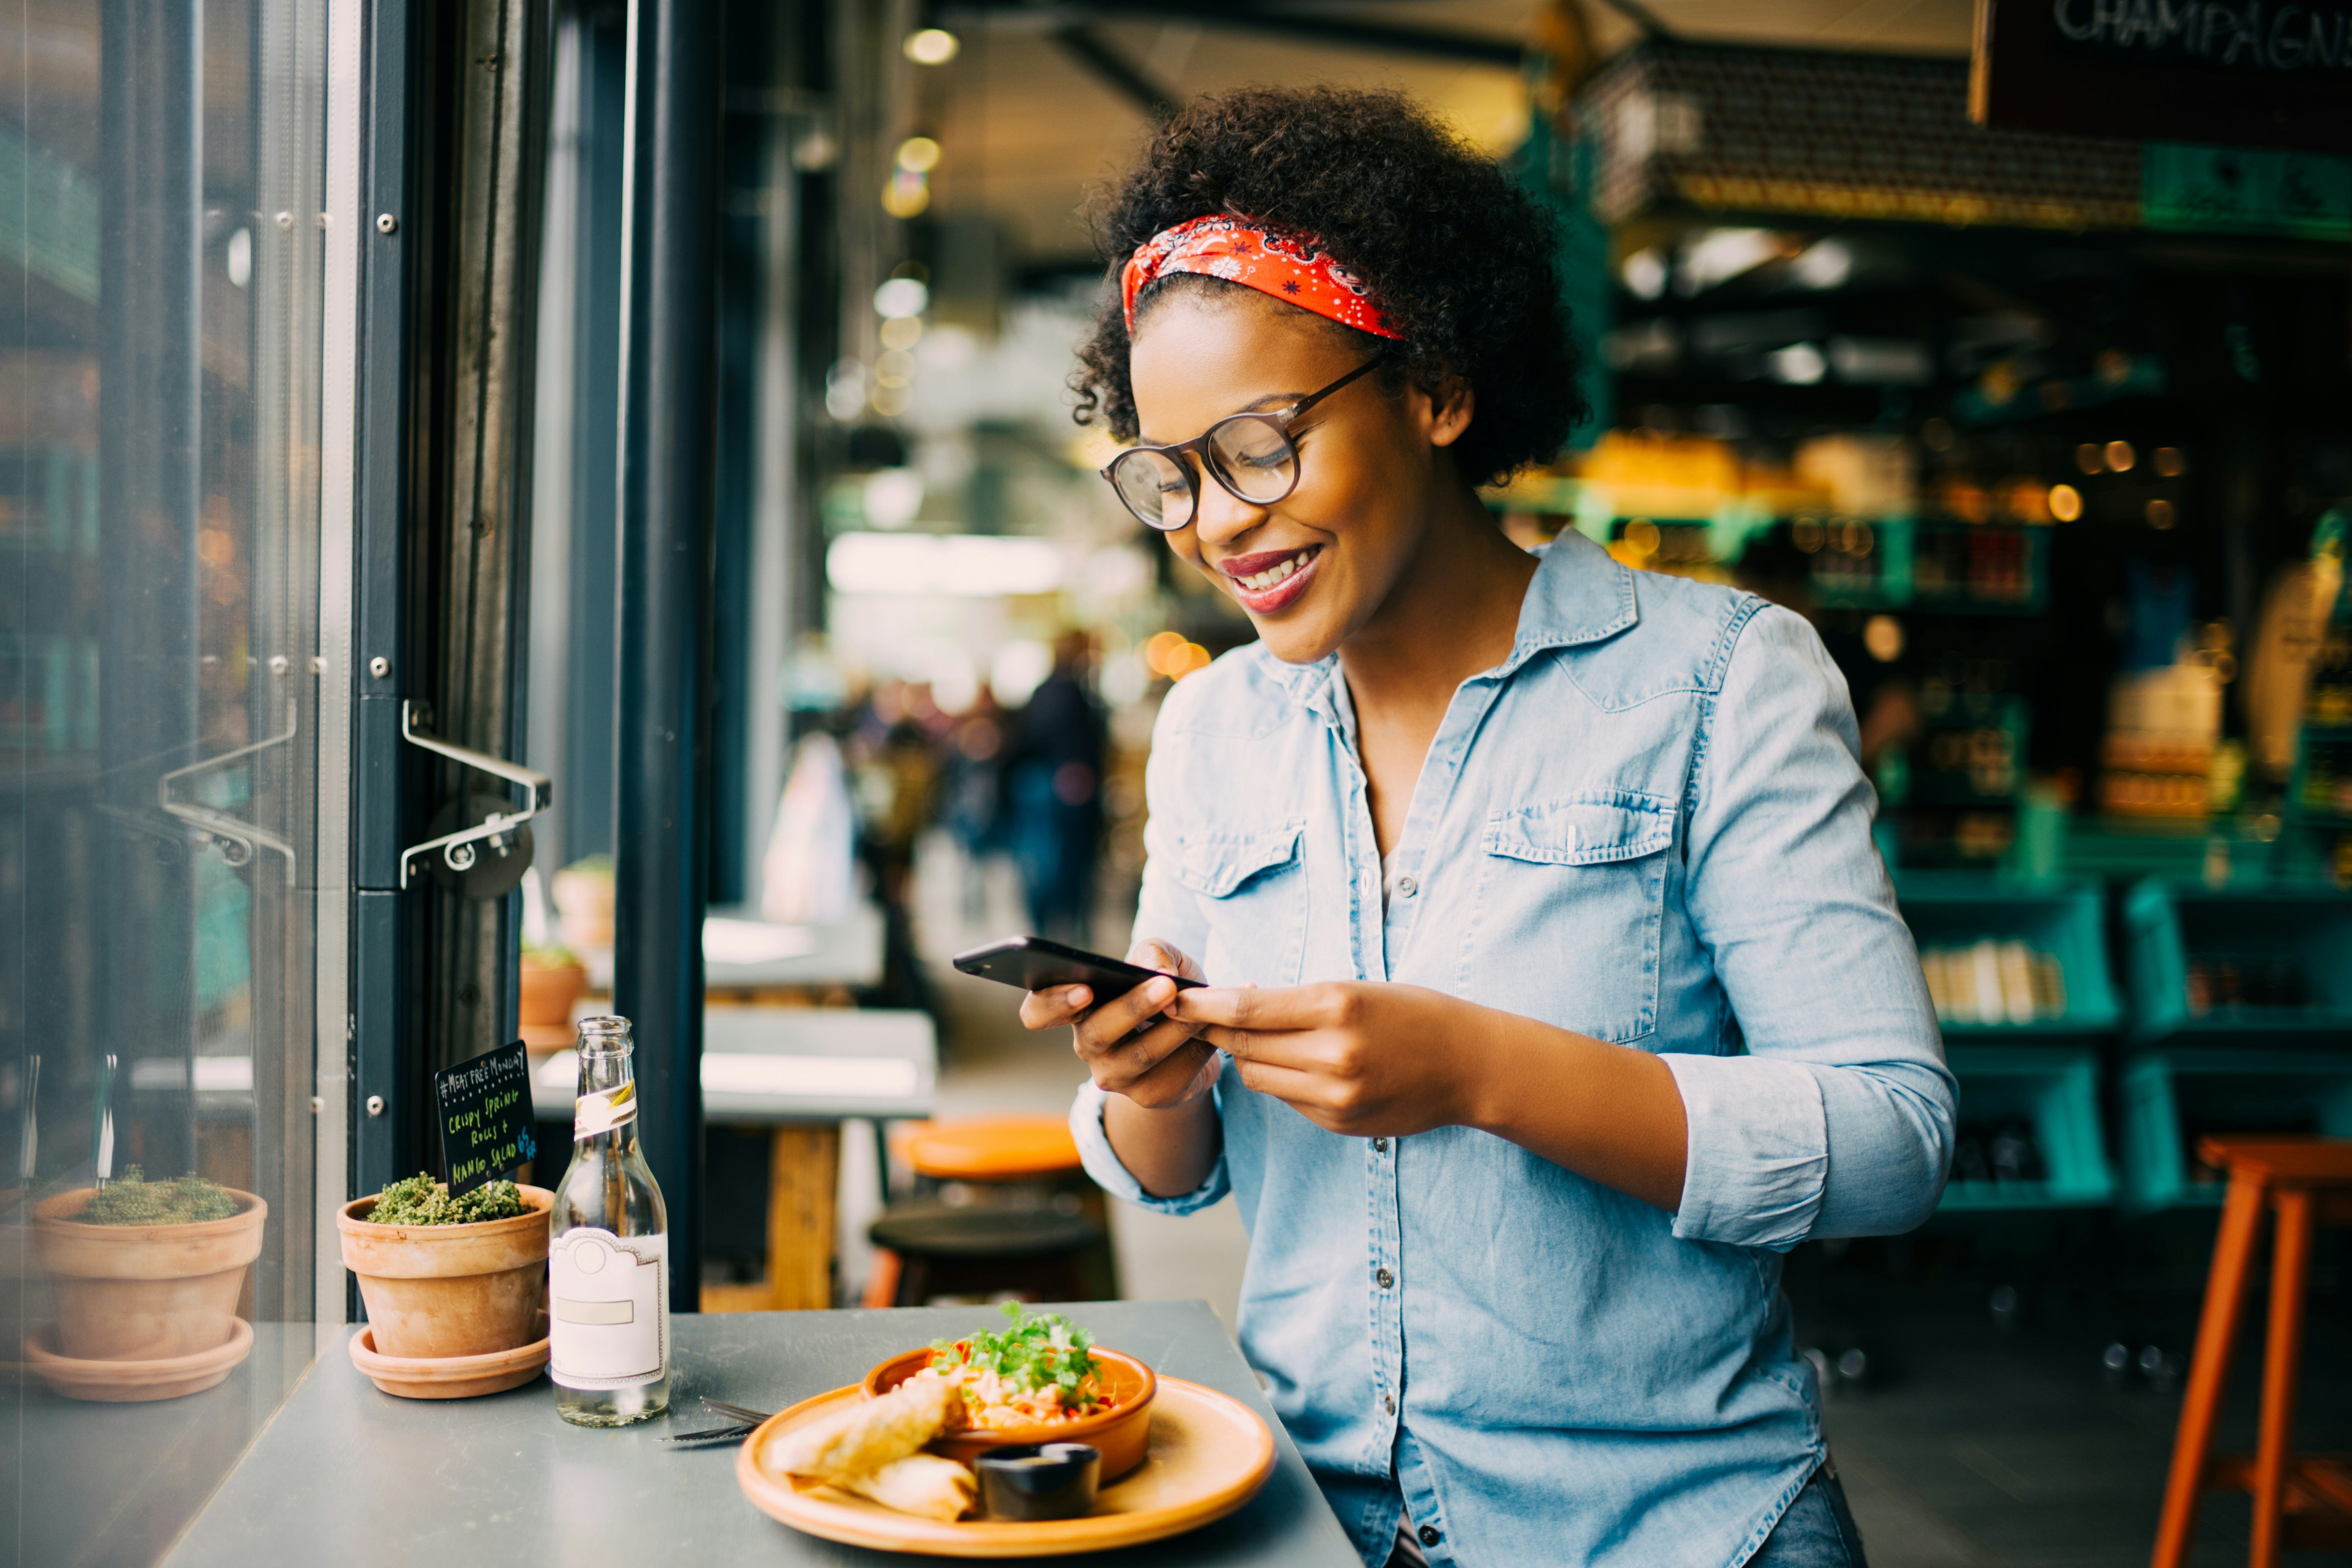 46 procent maakt foto van gerecht in restaurant voor social media of chat